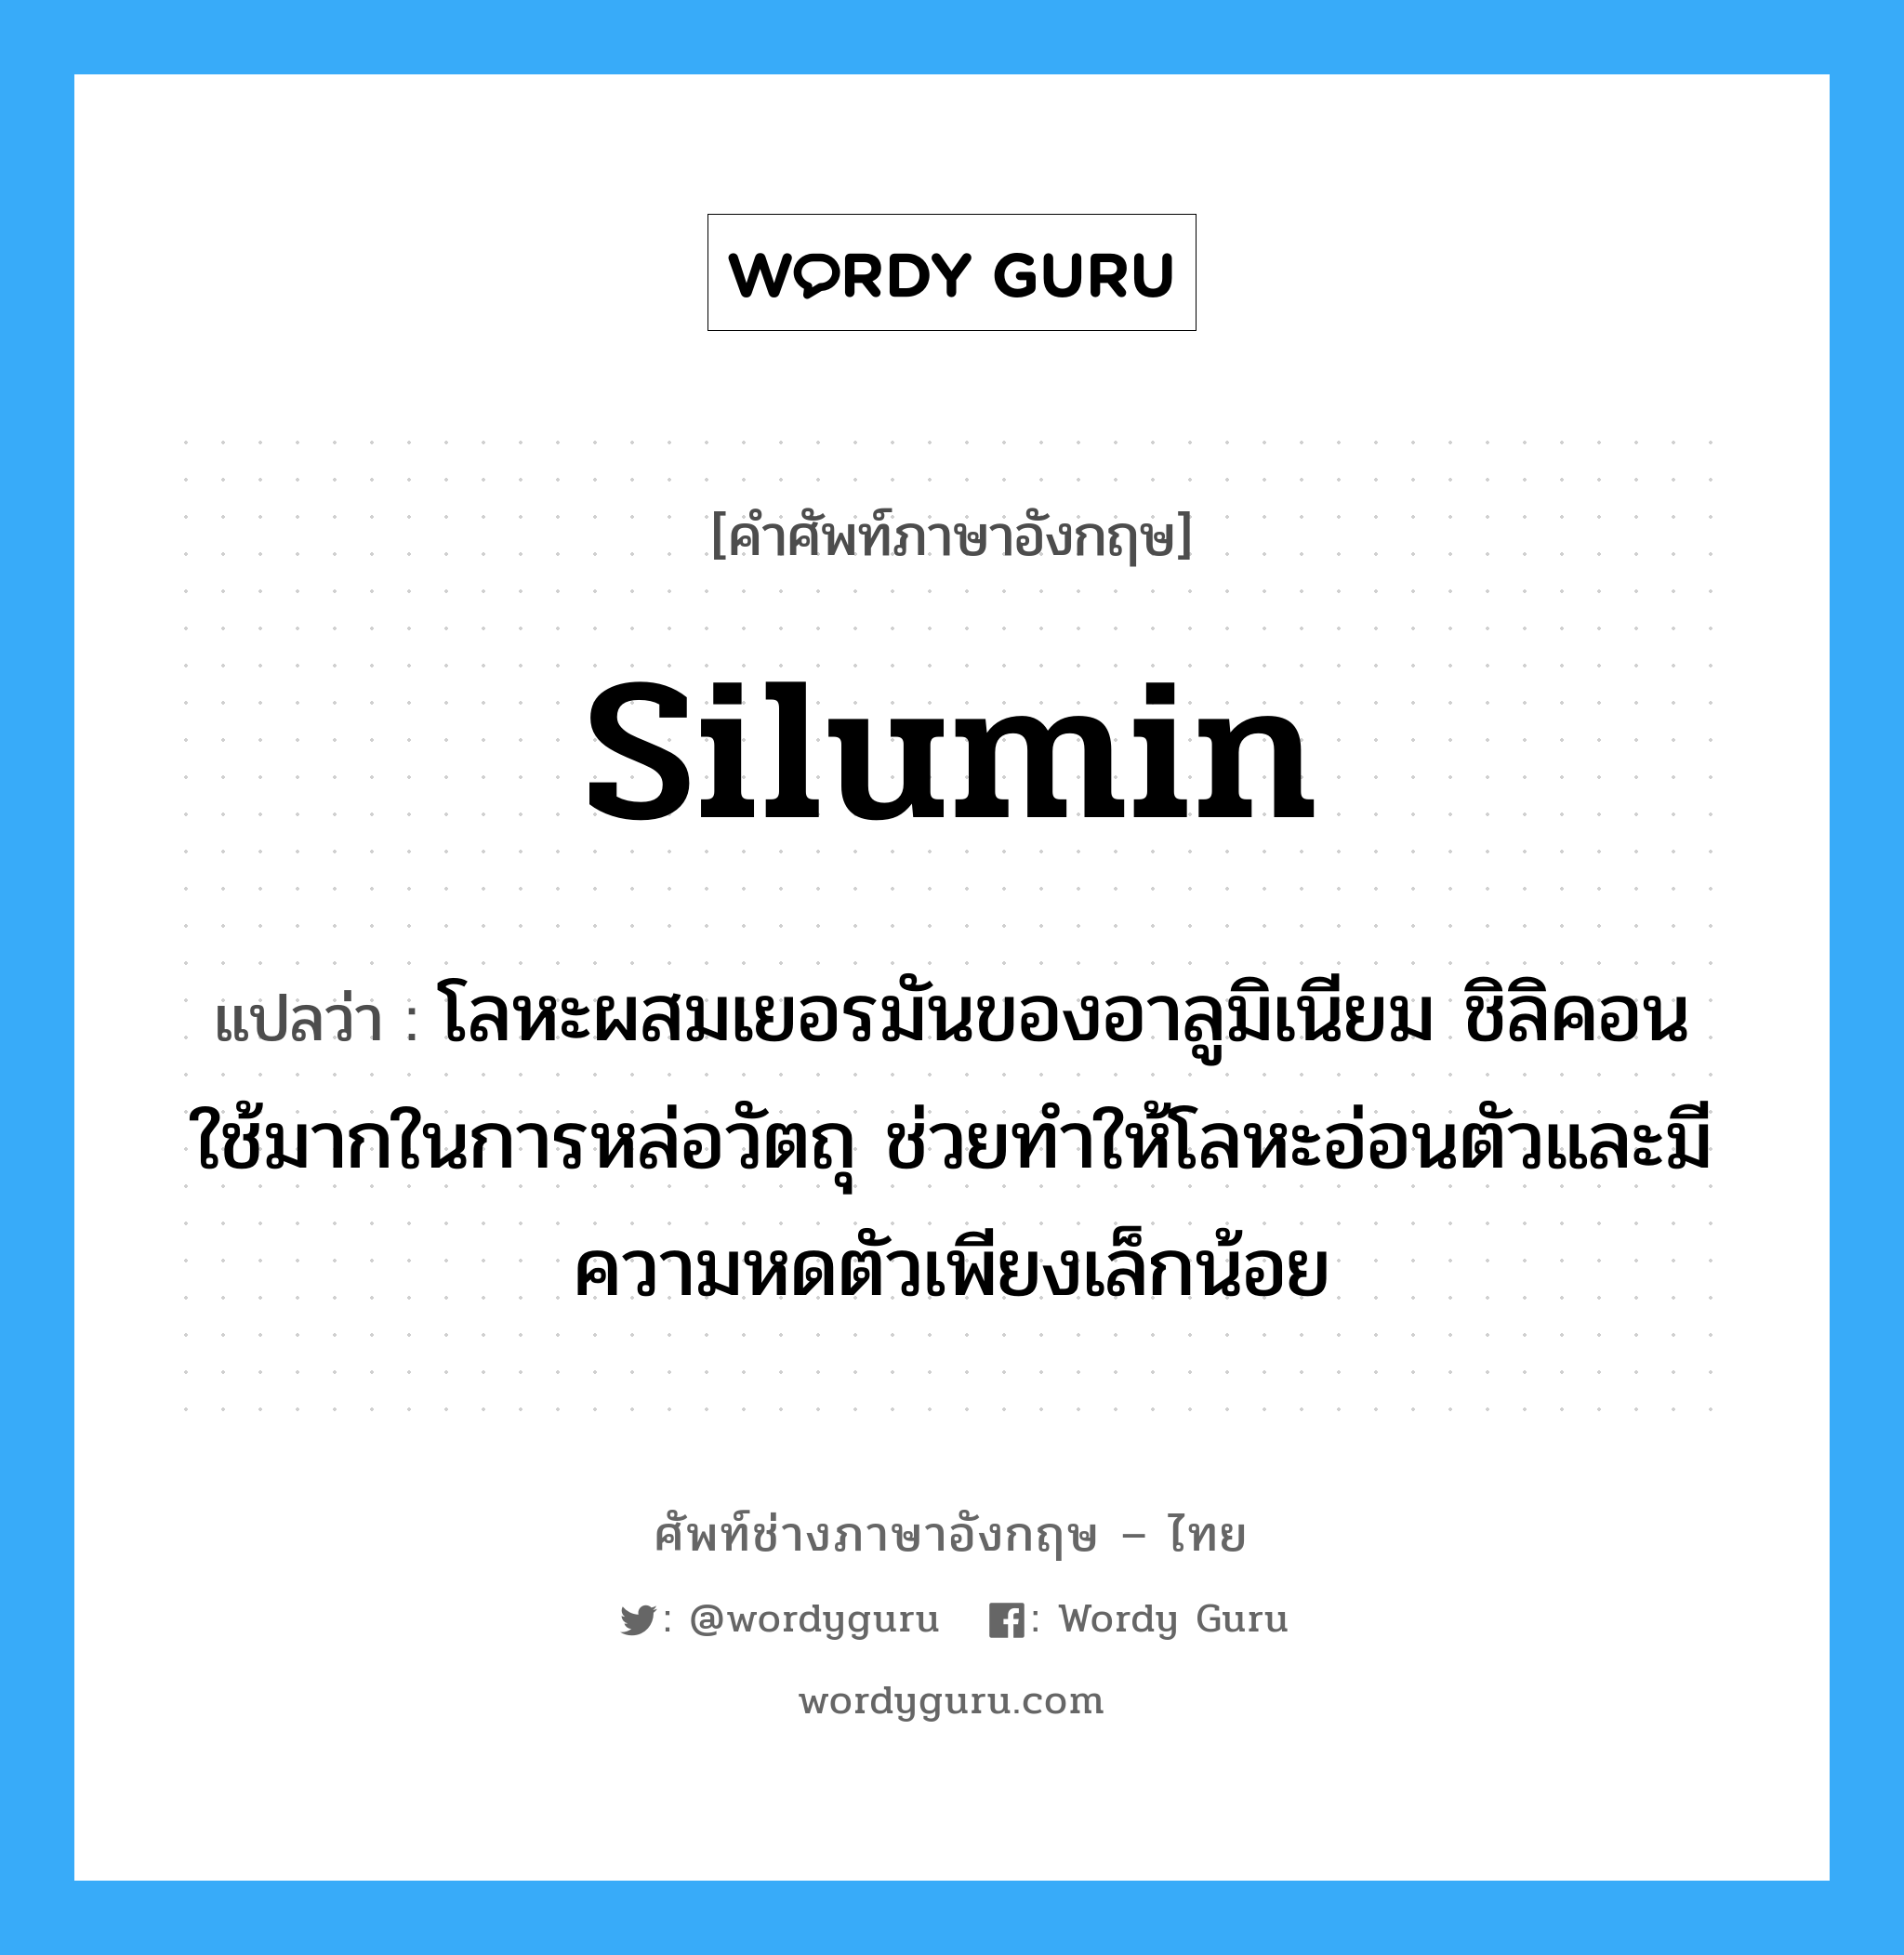 silumin แปลว่า?, คำศัพท์ช่างภาษาอังกฤษ - ไทย silumin คำศัพท์ภาษาอังกฤษ silumin แปลว่า โลหะผสมเยอรมันของอาลูมิเนียม ชิลิคอน ใช้มากในการหล่อวัตถุ ช่วยทำให้โลหะอ่อนตัวและมีความหดตัวเพียงเล็กน้อย